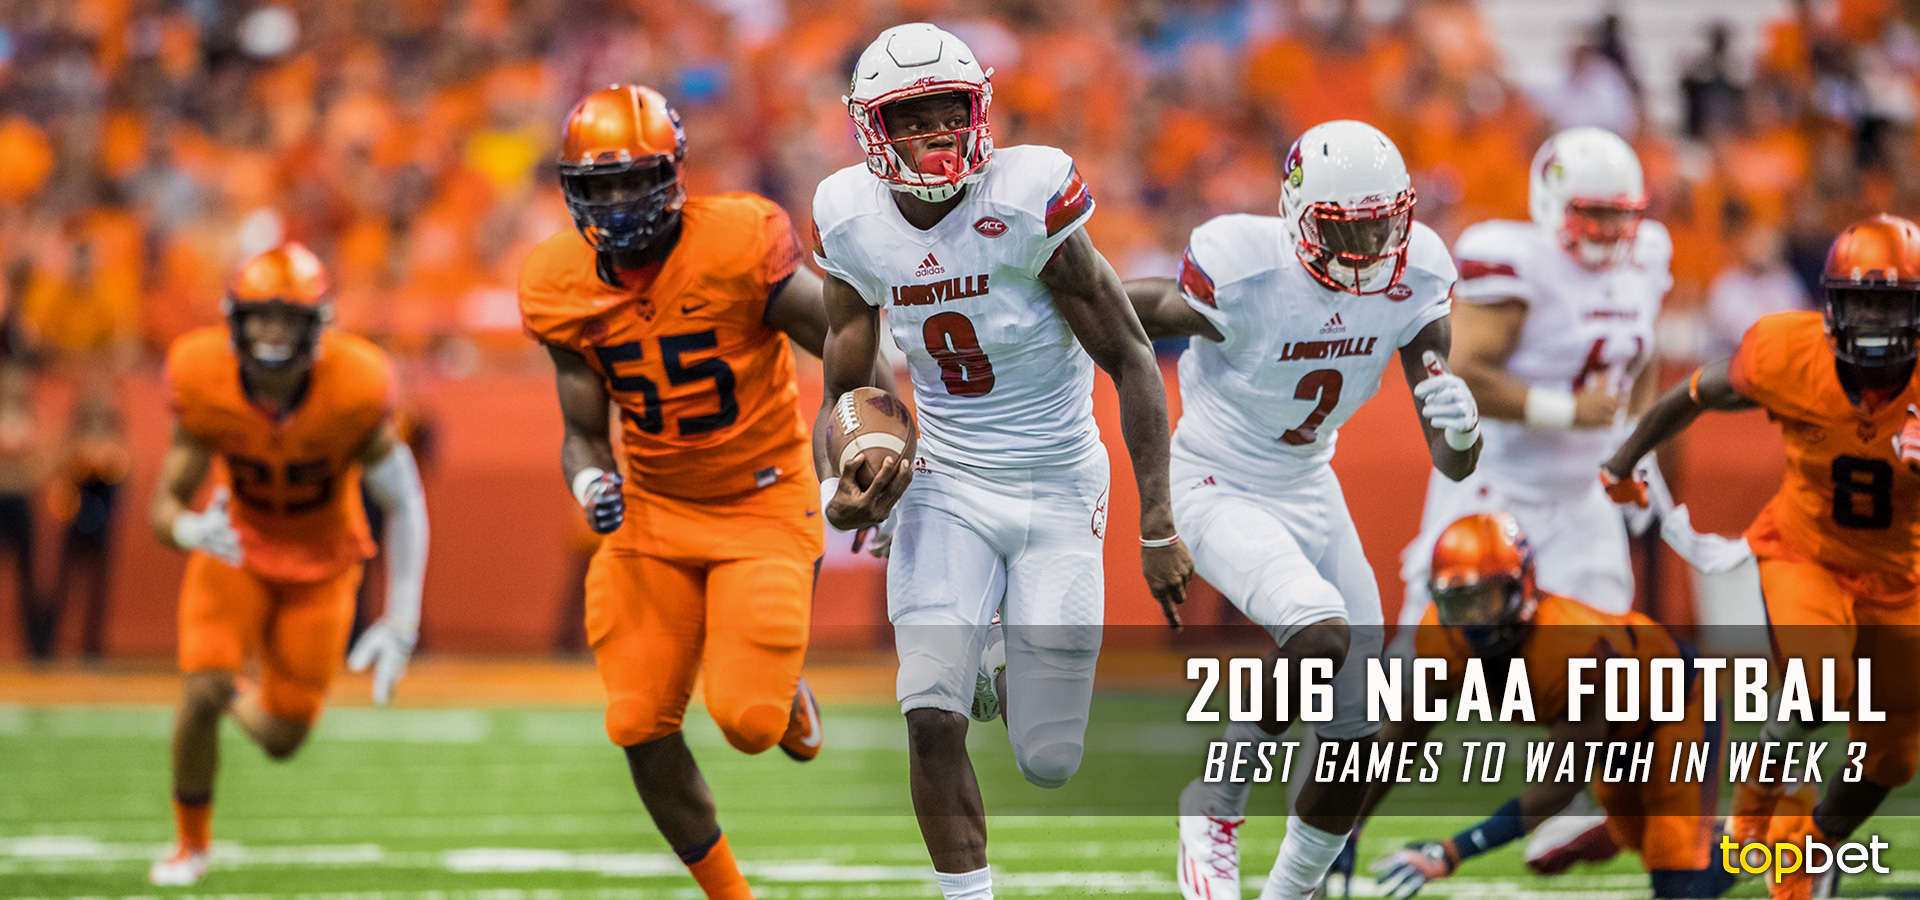 Best College Football Games to Watch - 2016 NCAA Season Week 3